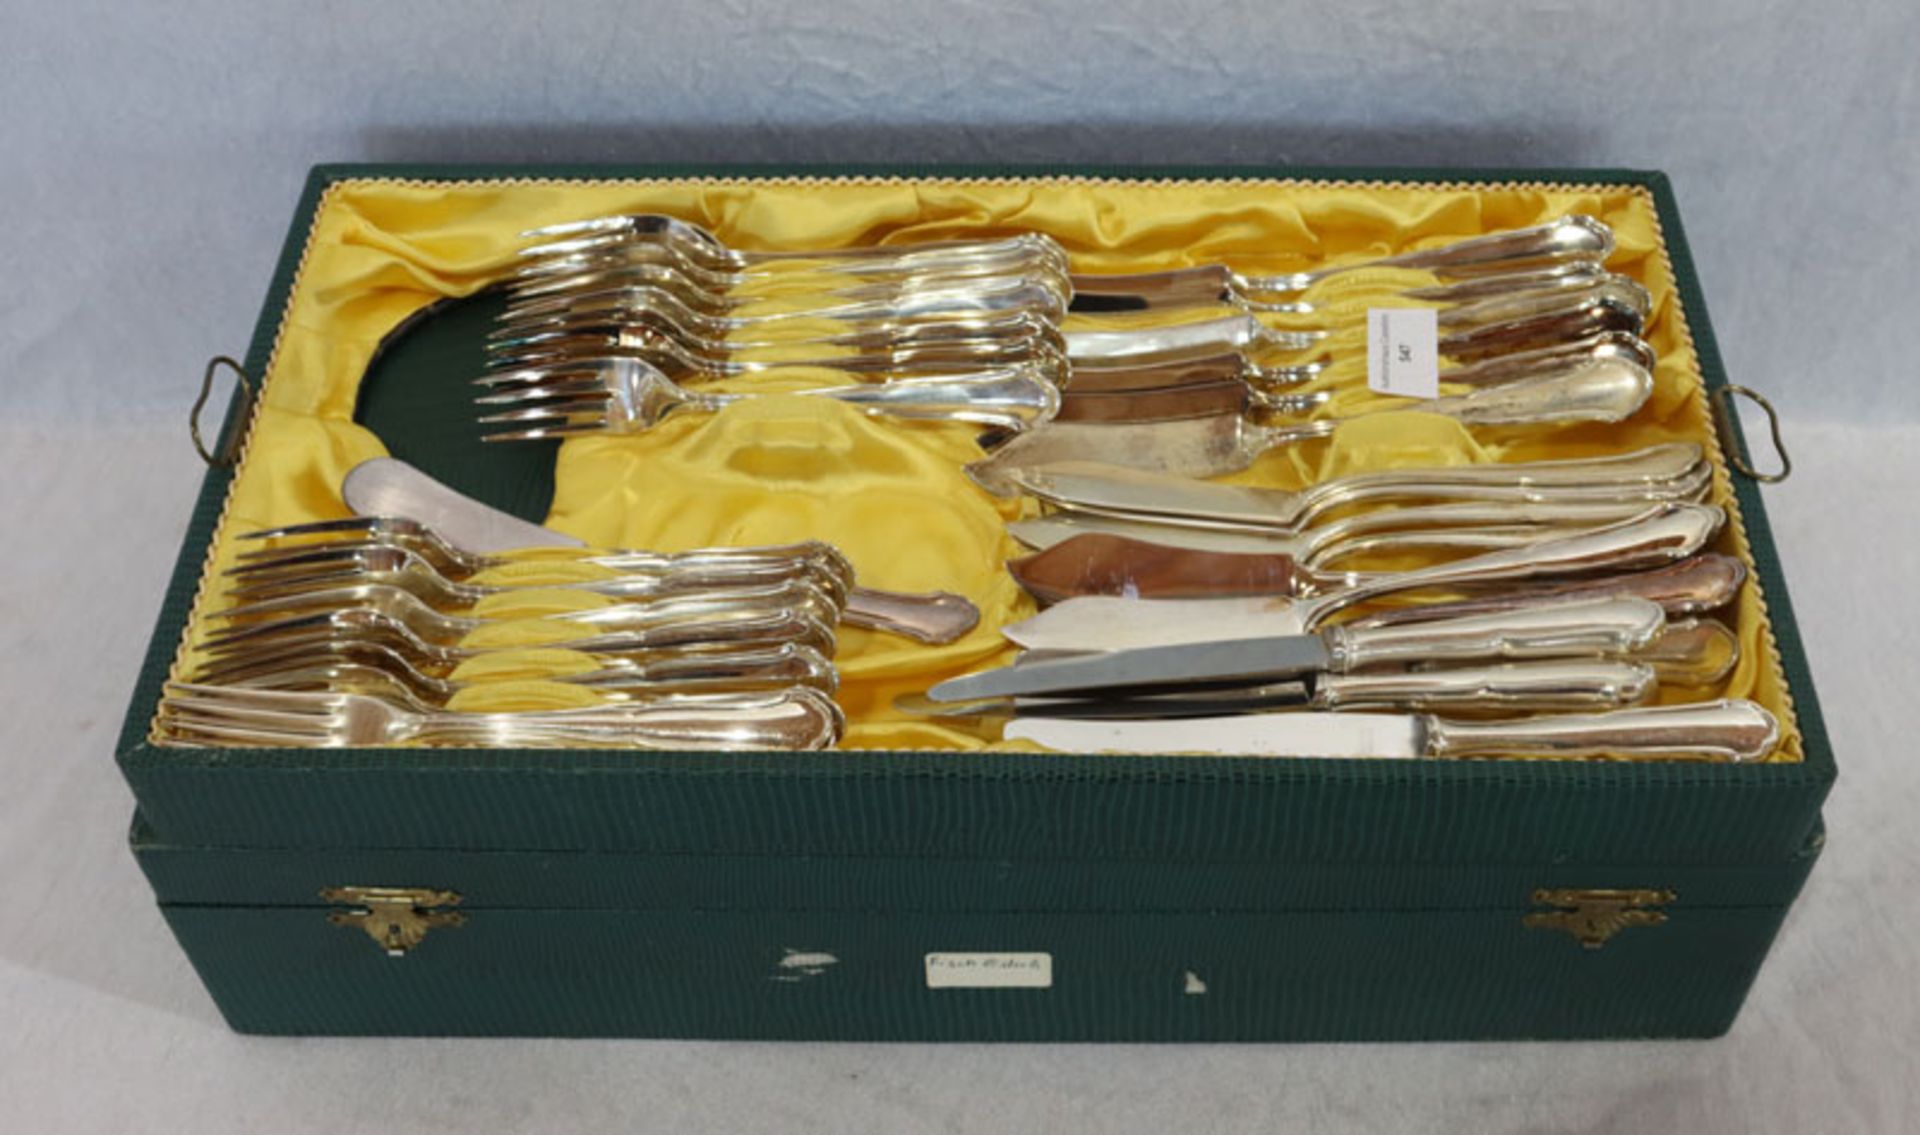 Silber Besteckteile, 800 Silber, 1516 gr. ohne Messer, 12 Fisch-Gabeln und 12 Messer, 5 Vorspeisen-